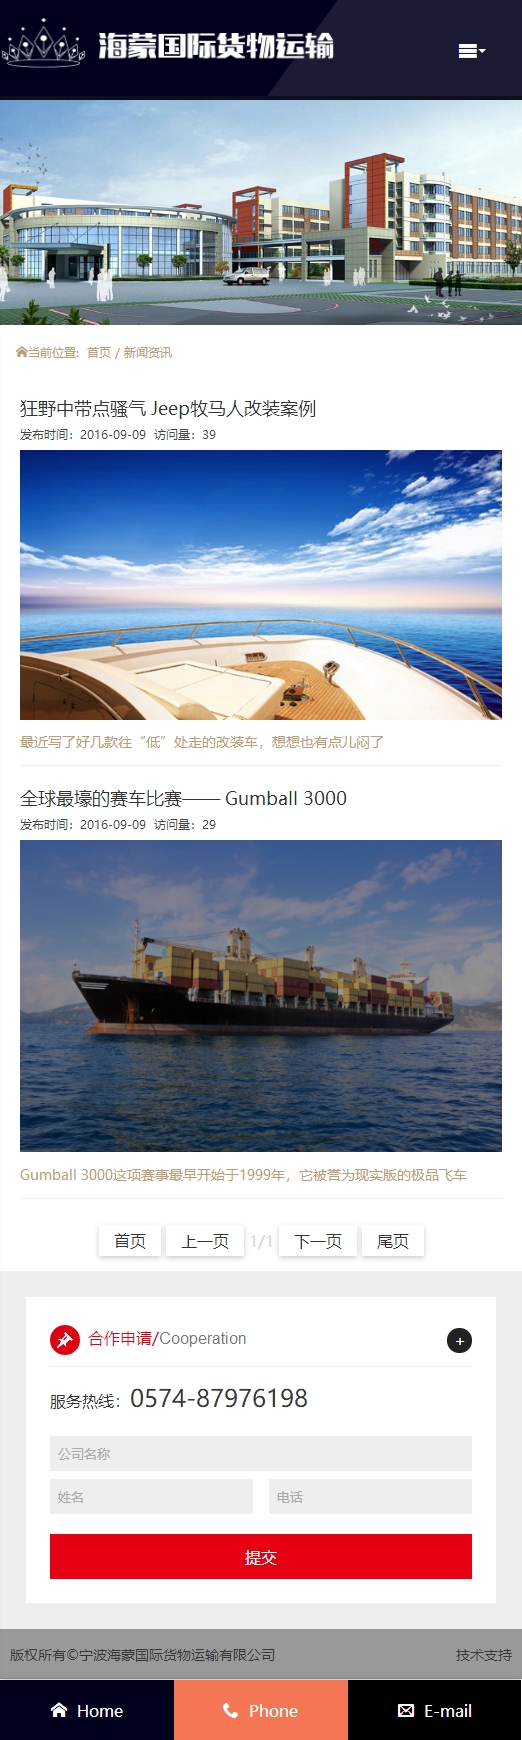 宁波海蒙国际货运运输有限公司